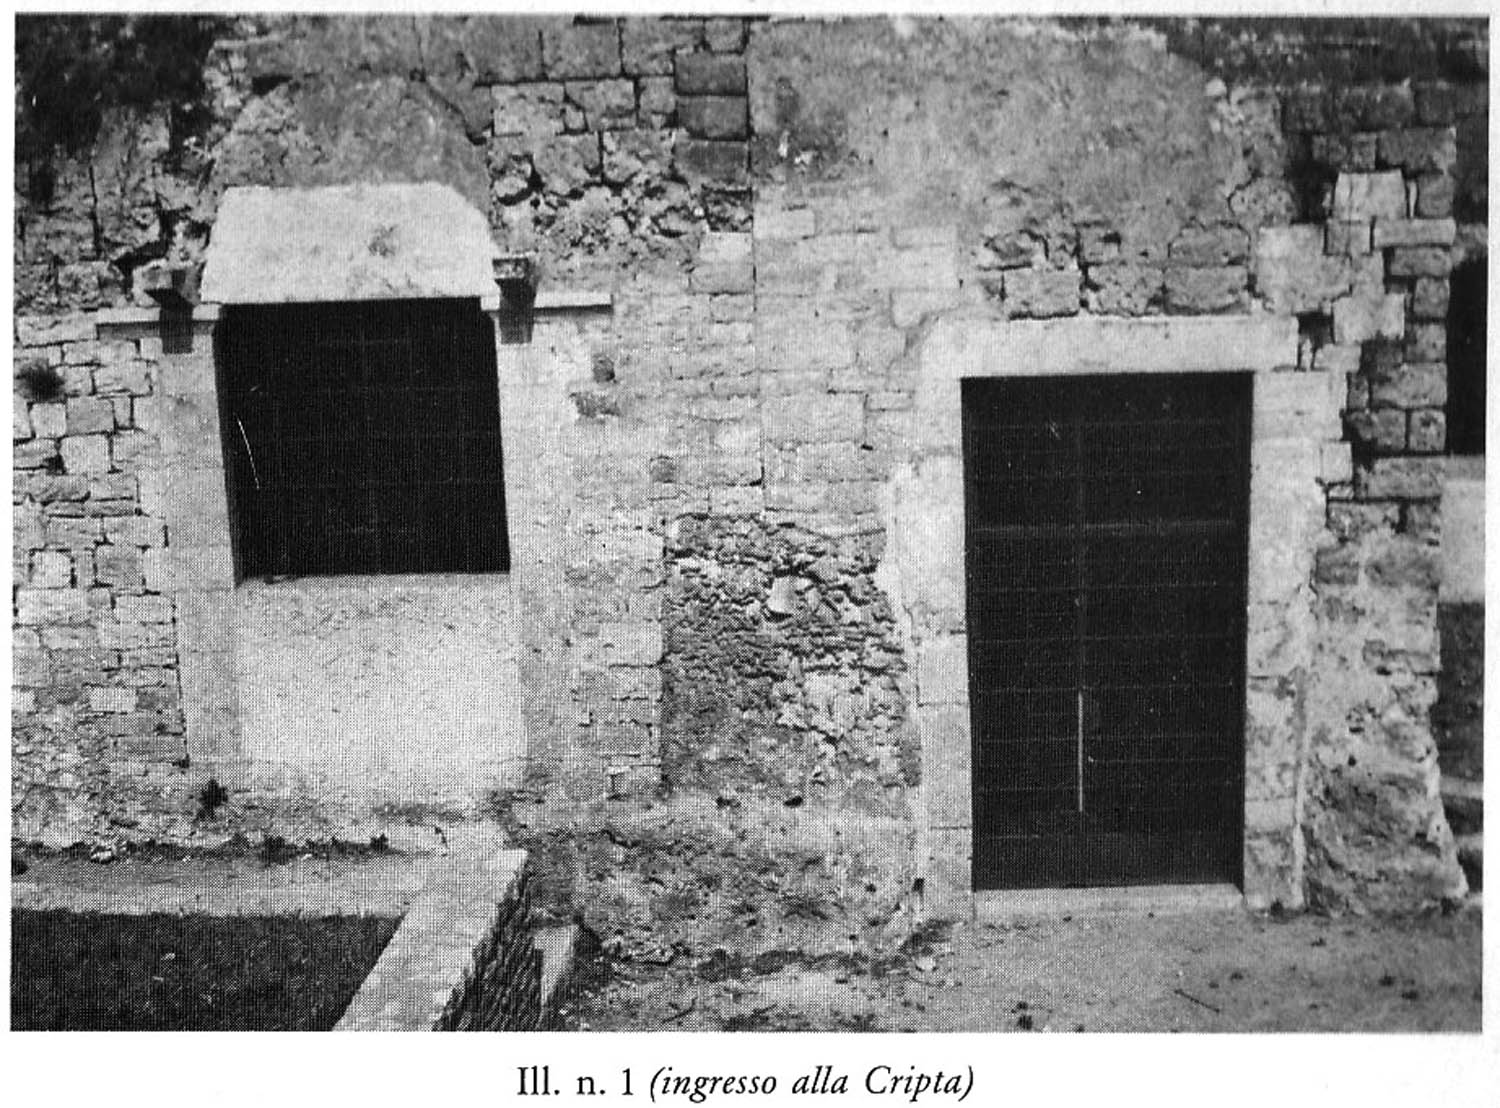 Ill. n.1 (ingresso alla Cripta)